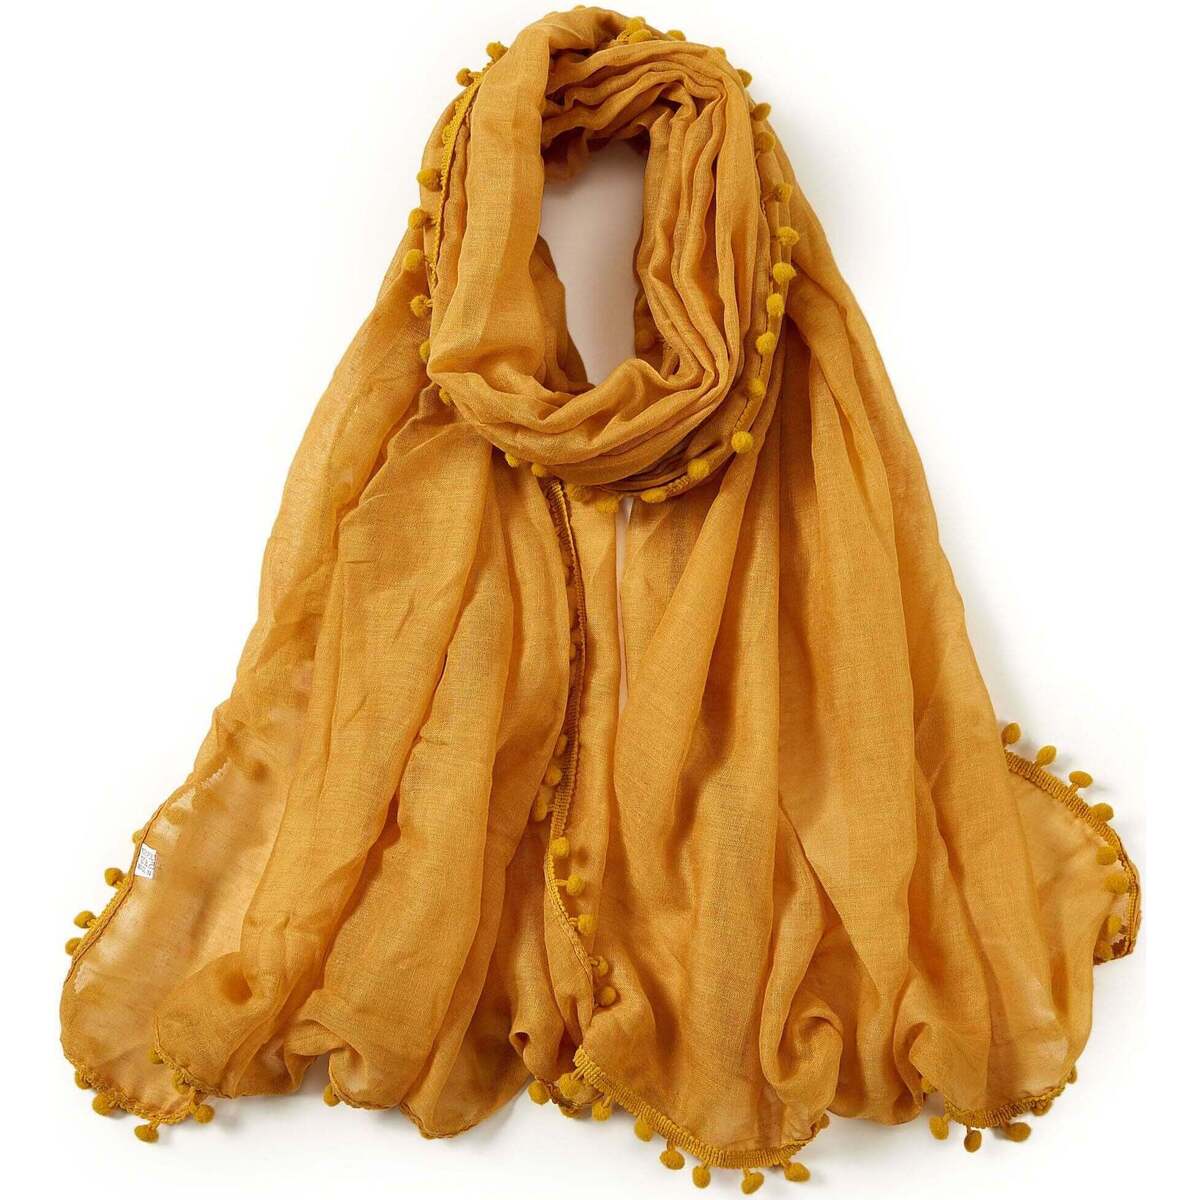 Accessoires textile Femme Allée Du Foulard Chèche coton jaune or Elvia Corail Orange